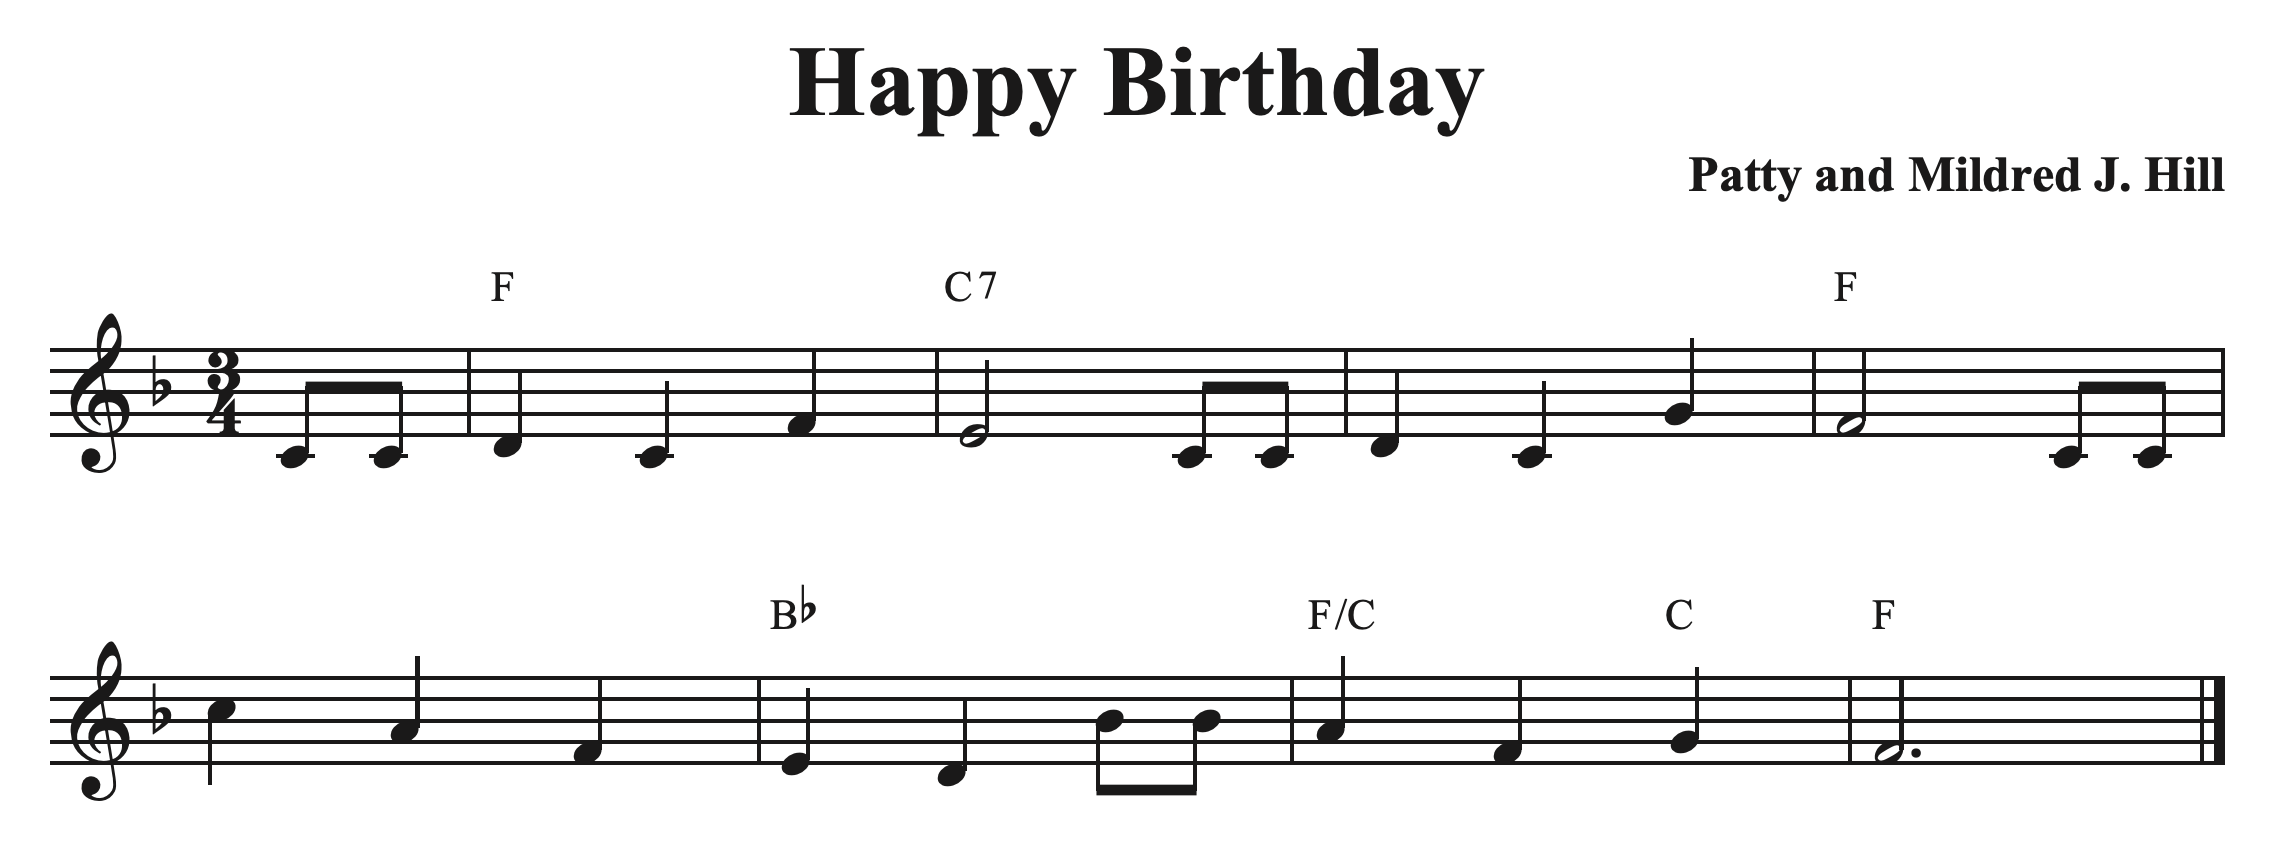 Happy Birthday Latin Style — Bradley Sowash Music